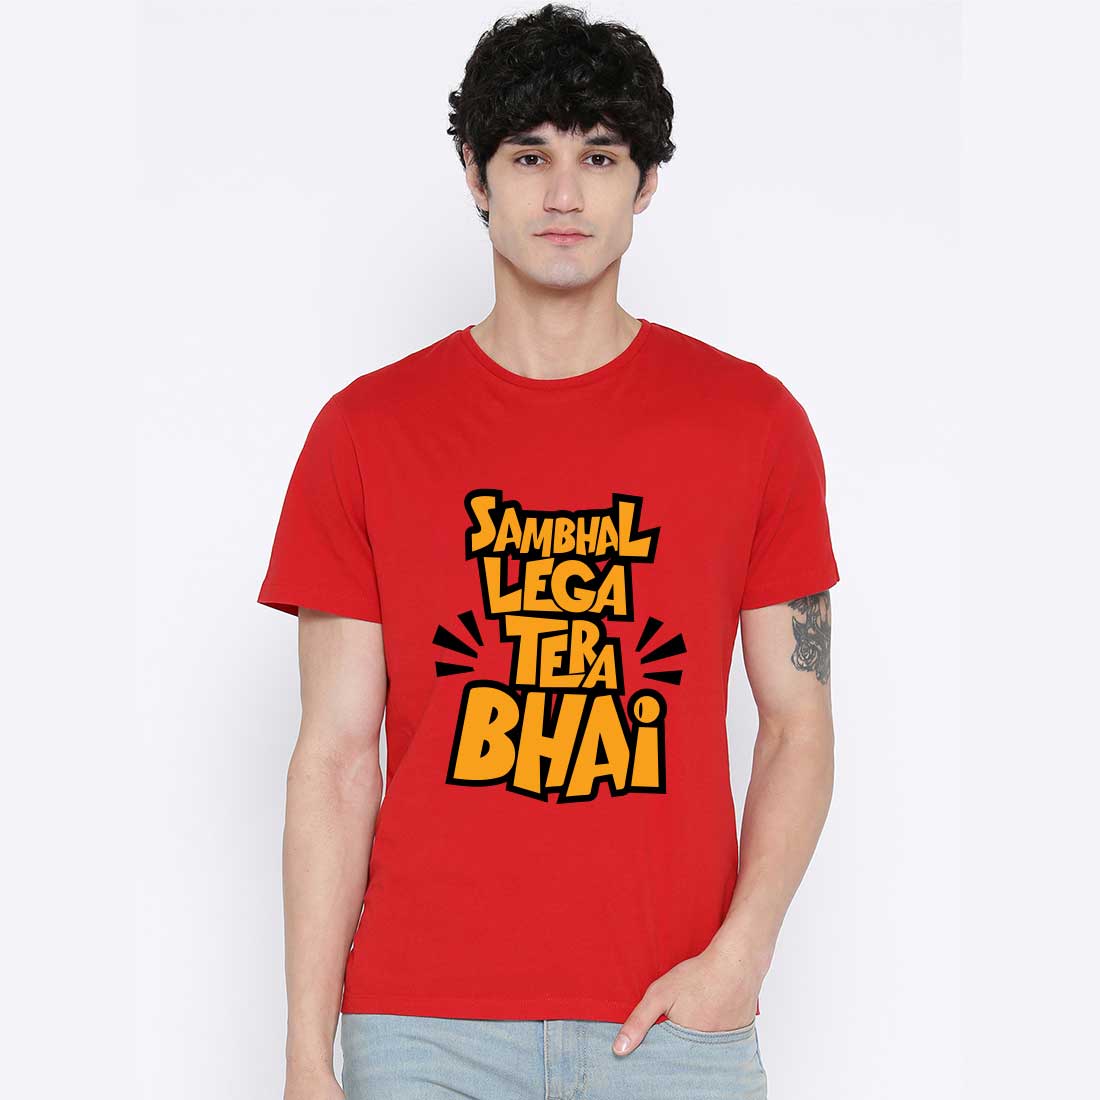 Shambhal Lega Tera Bhai  Red Men T-Shirt